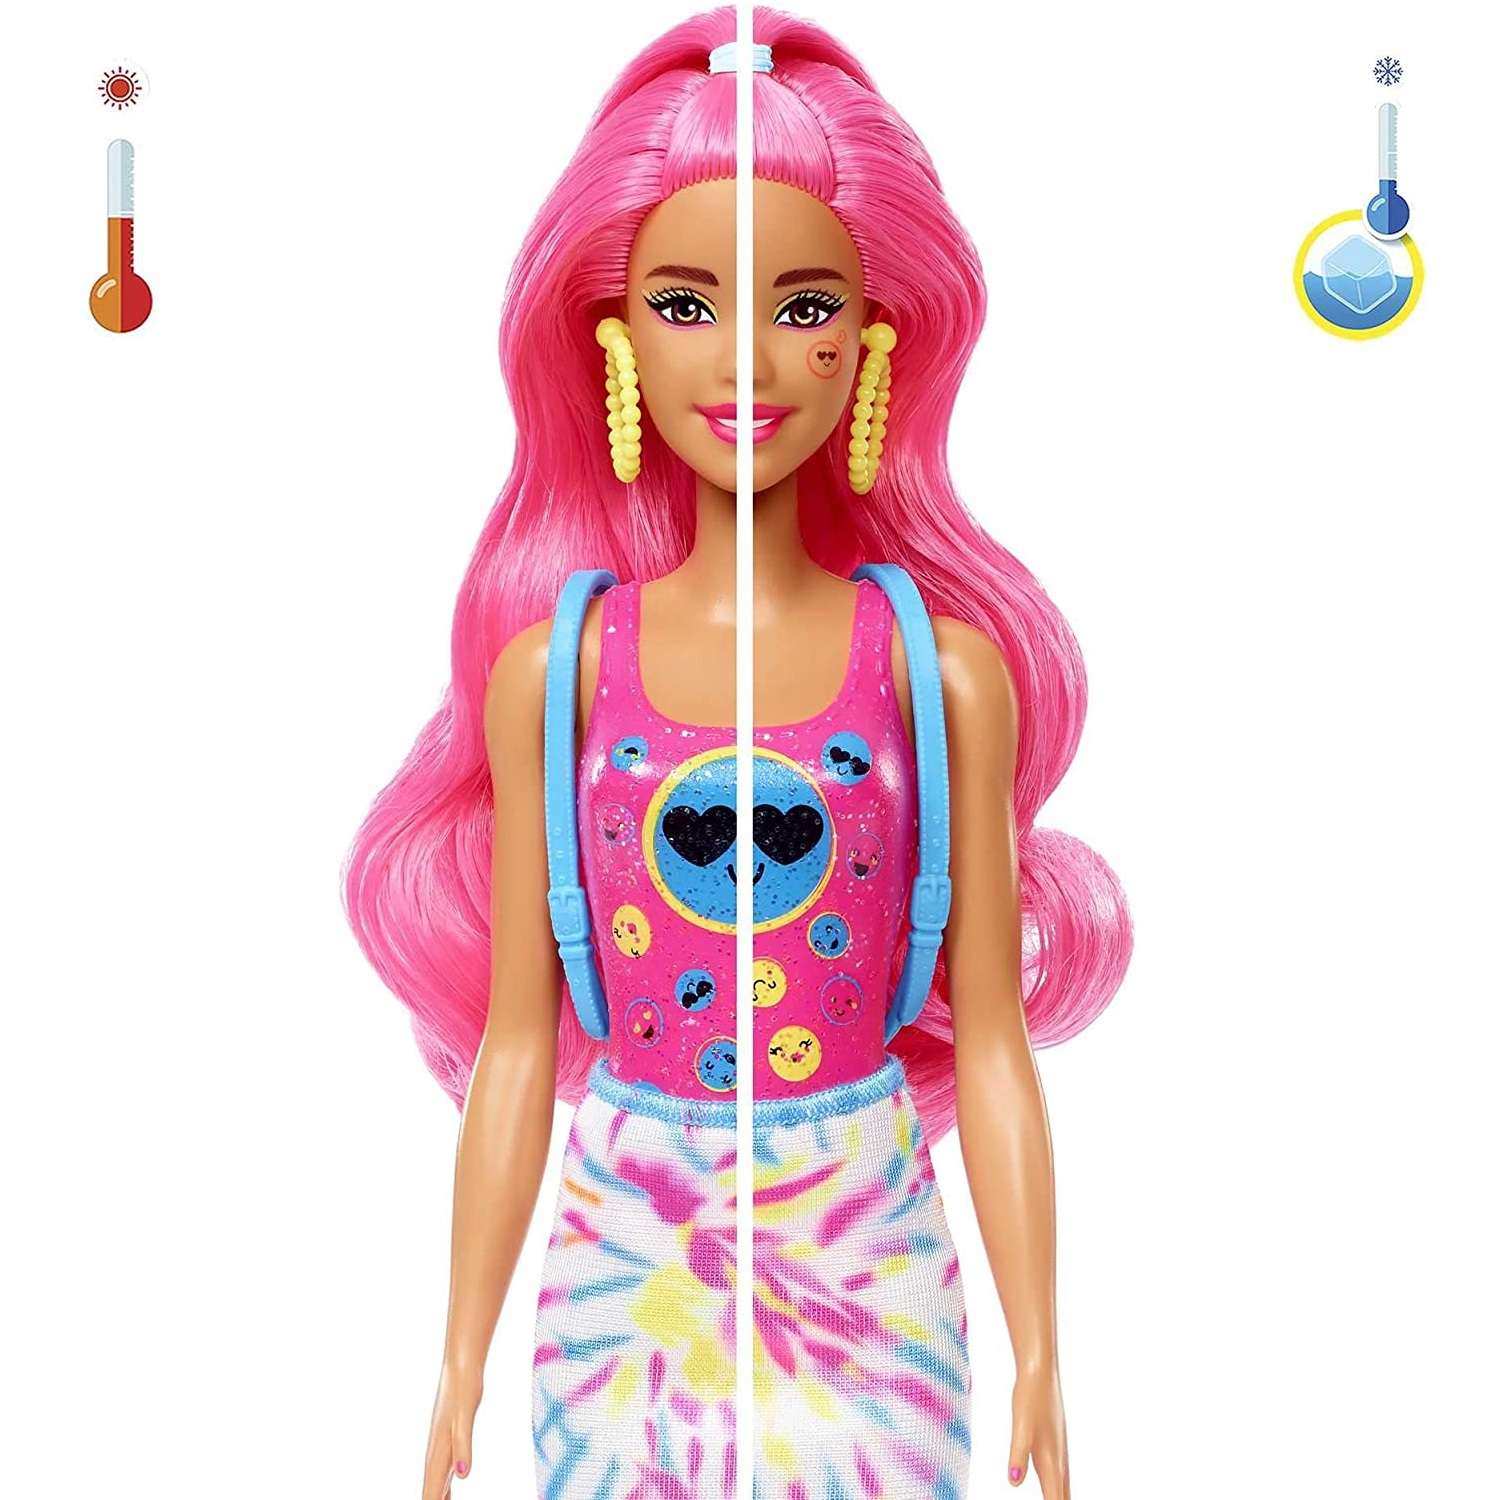 Кукла Barbie меняющая цвет в непрозрачной упаковке (Сюрприз) HDN72 HDN72 - фото 4